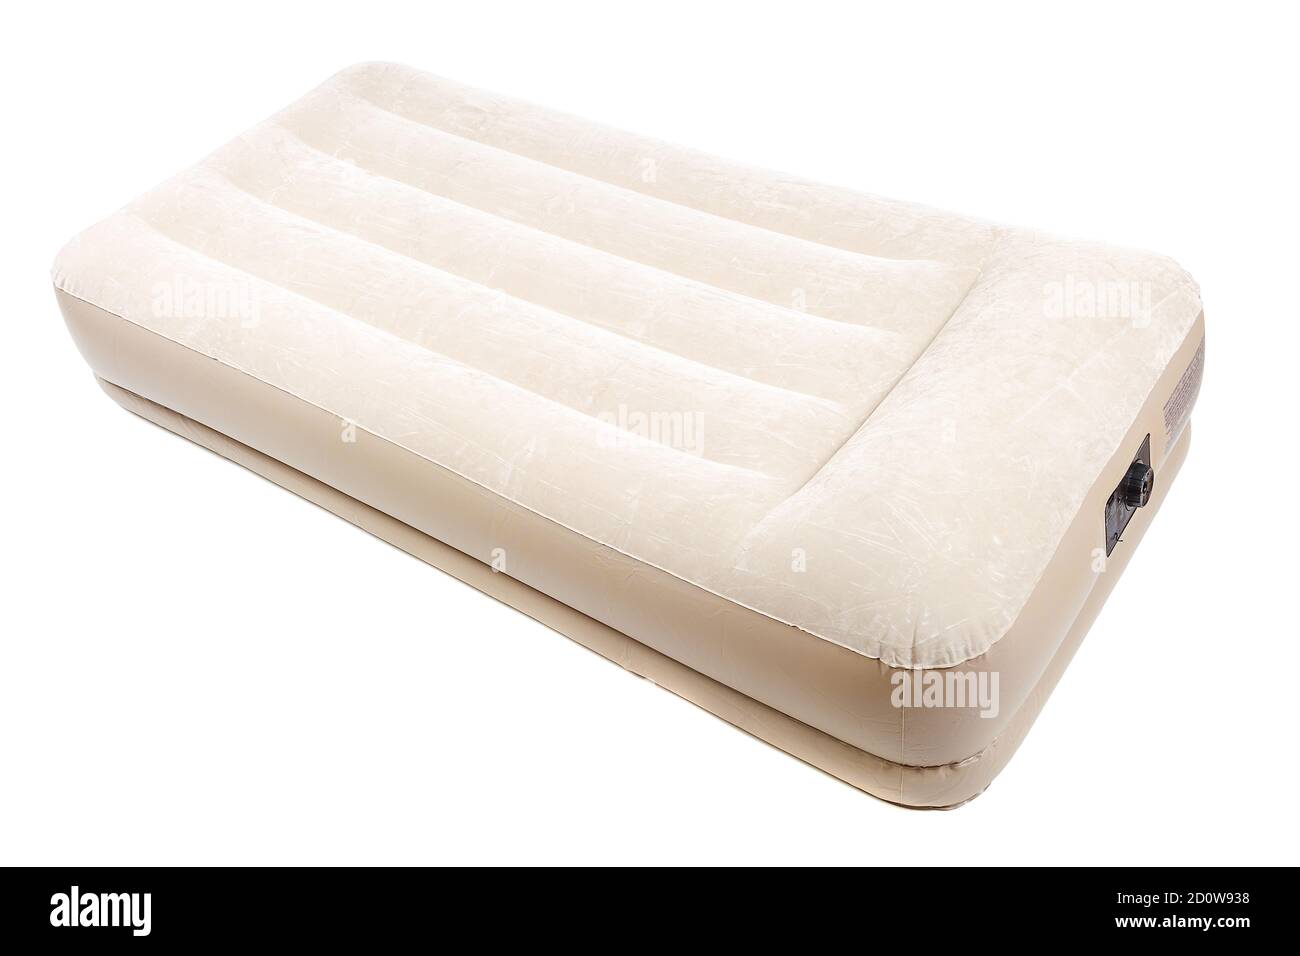 Materasso ad aria con pompa elettrica per riposo e sonno isolato su sfondo bianco. Foto Stock